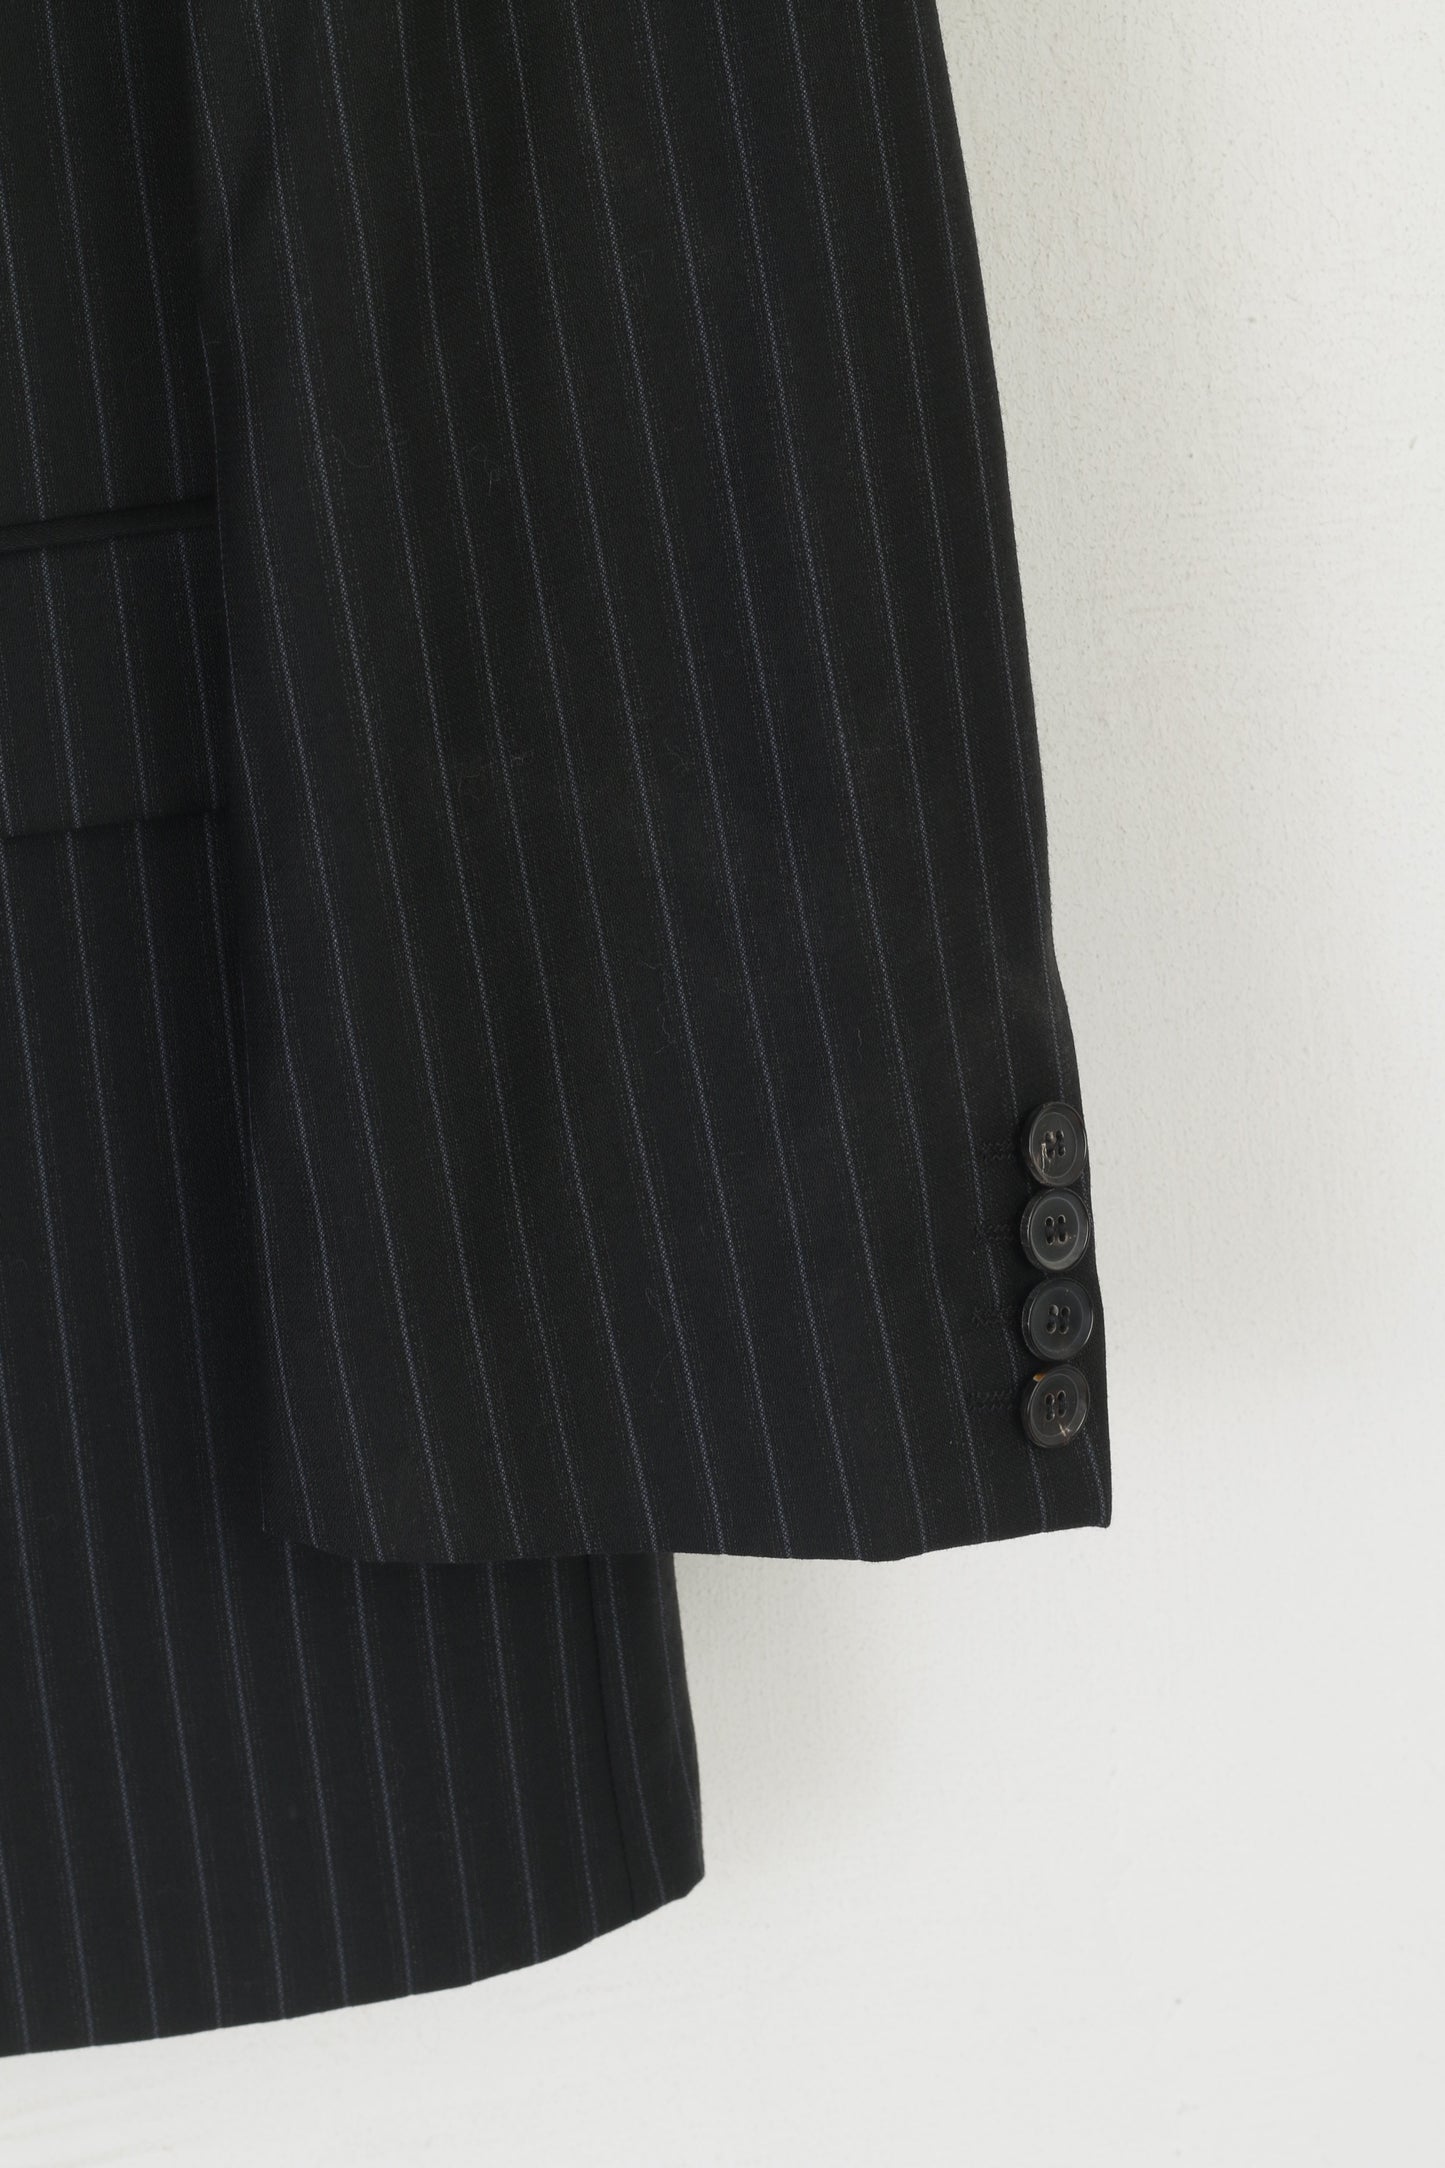 Hugo Boss Men 54 44 Blazer Black Wool Navy Striped Rossellini Single Breasted Jacket